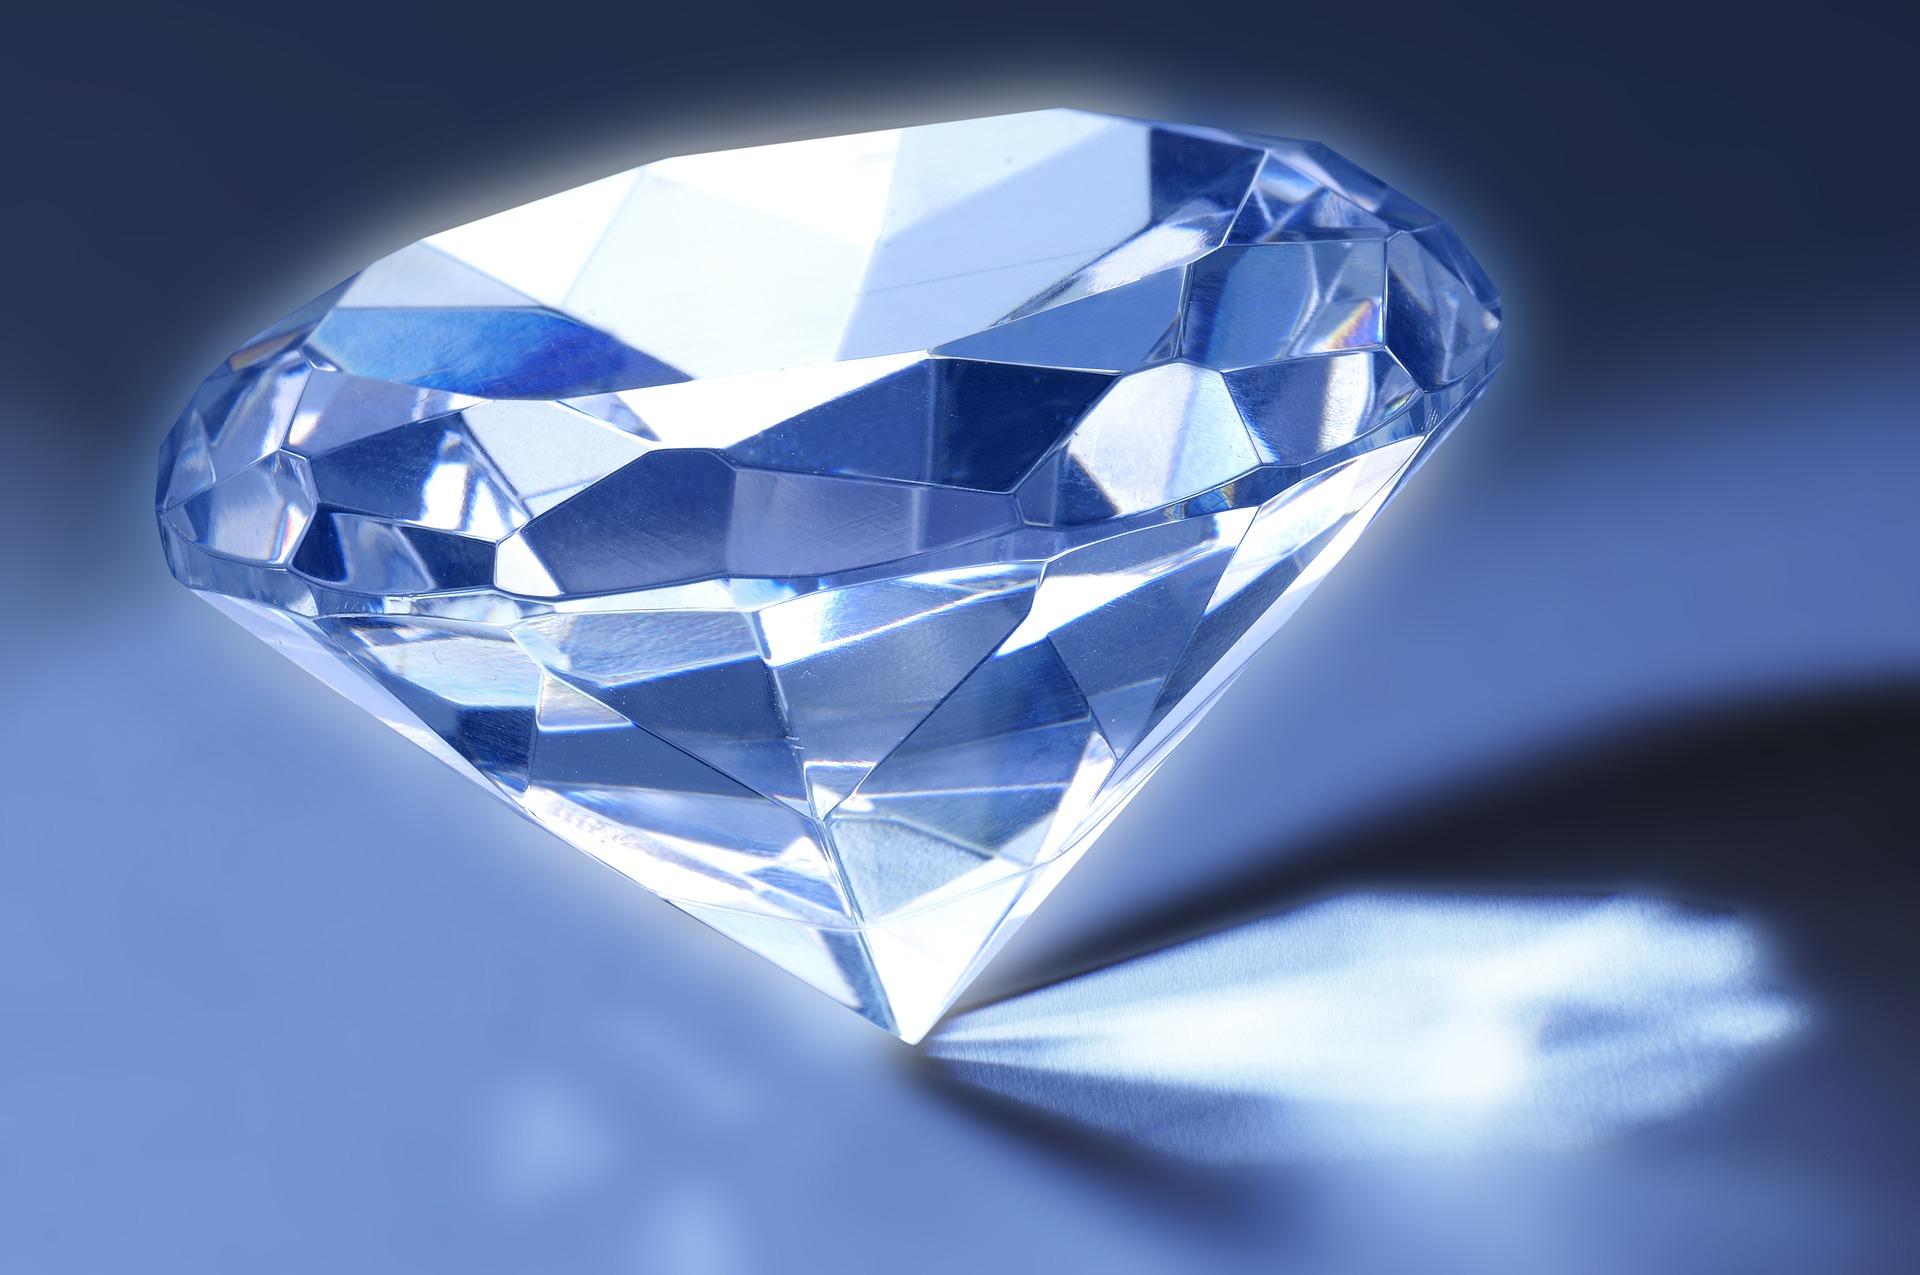 https://www.kompetenzzentrum-kommunikation.de/wp-content/uploads/2020/07/diamond-stefan-kuhn-pixabay.jpg